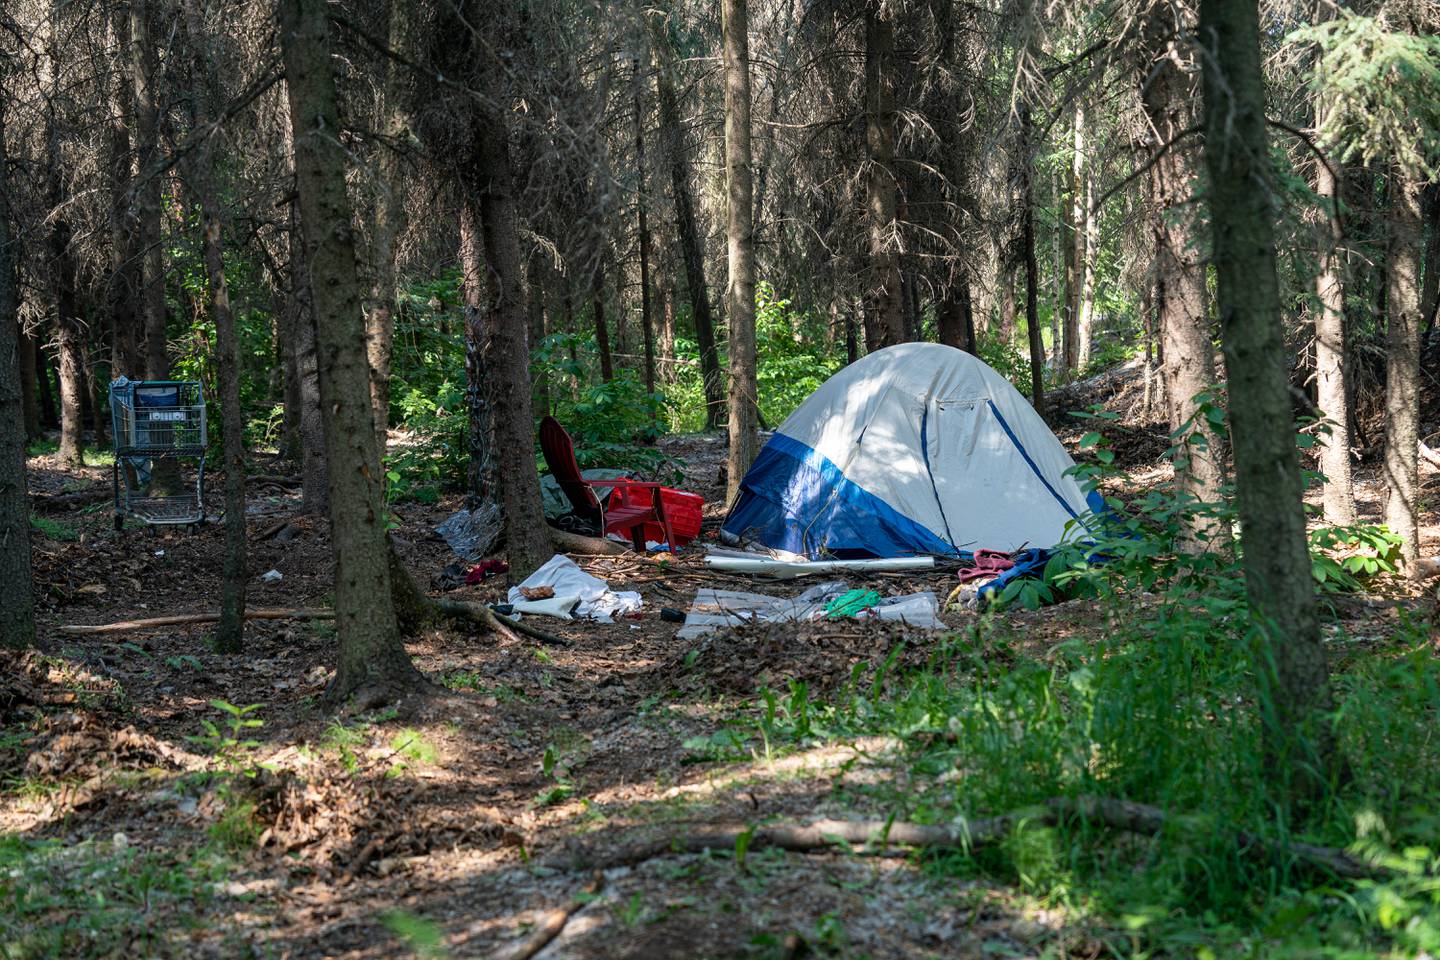 Chester Creek, homeless, homeless camp, homelessness